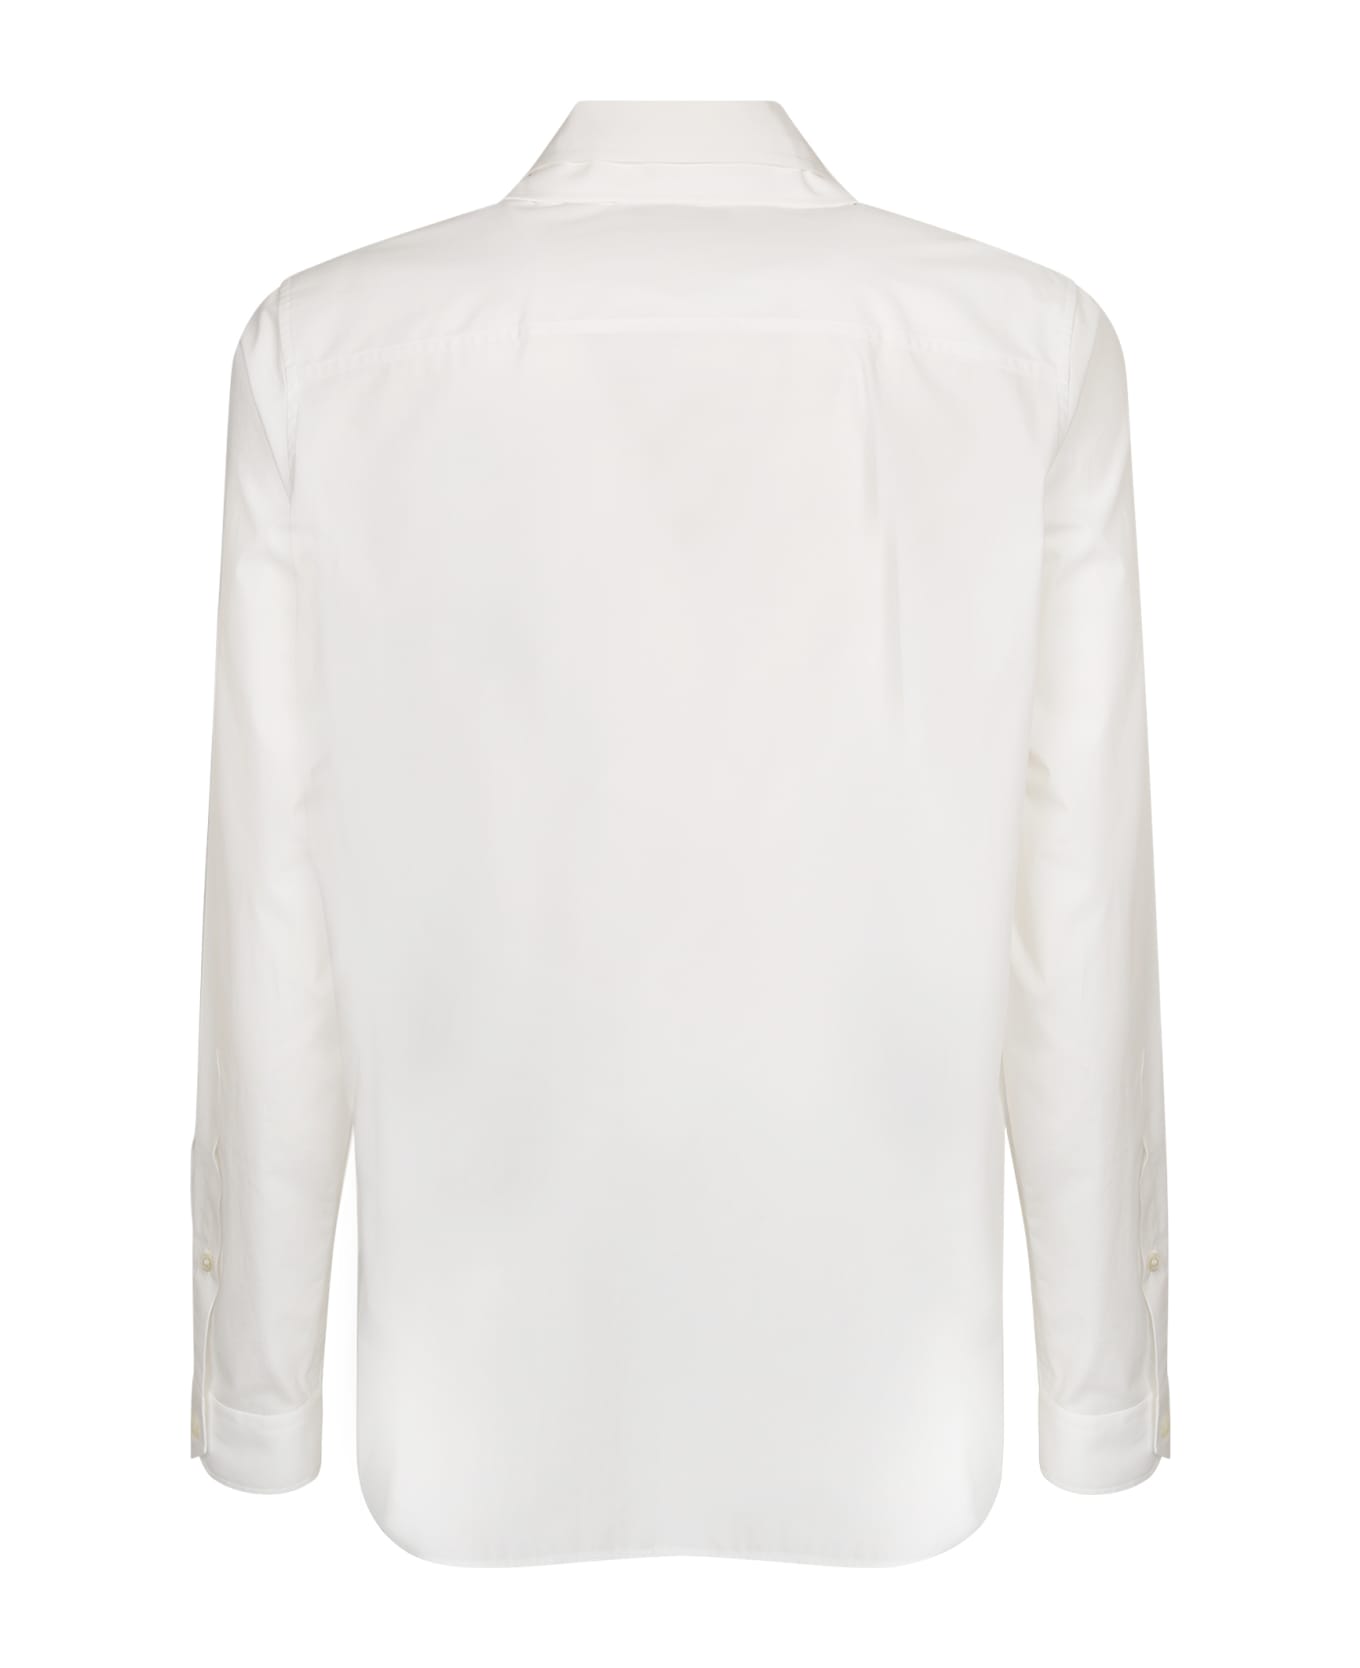 Valentino Camicia Bianca - White シャツ